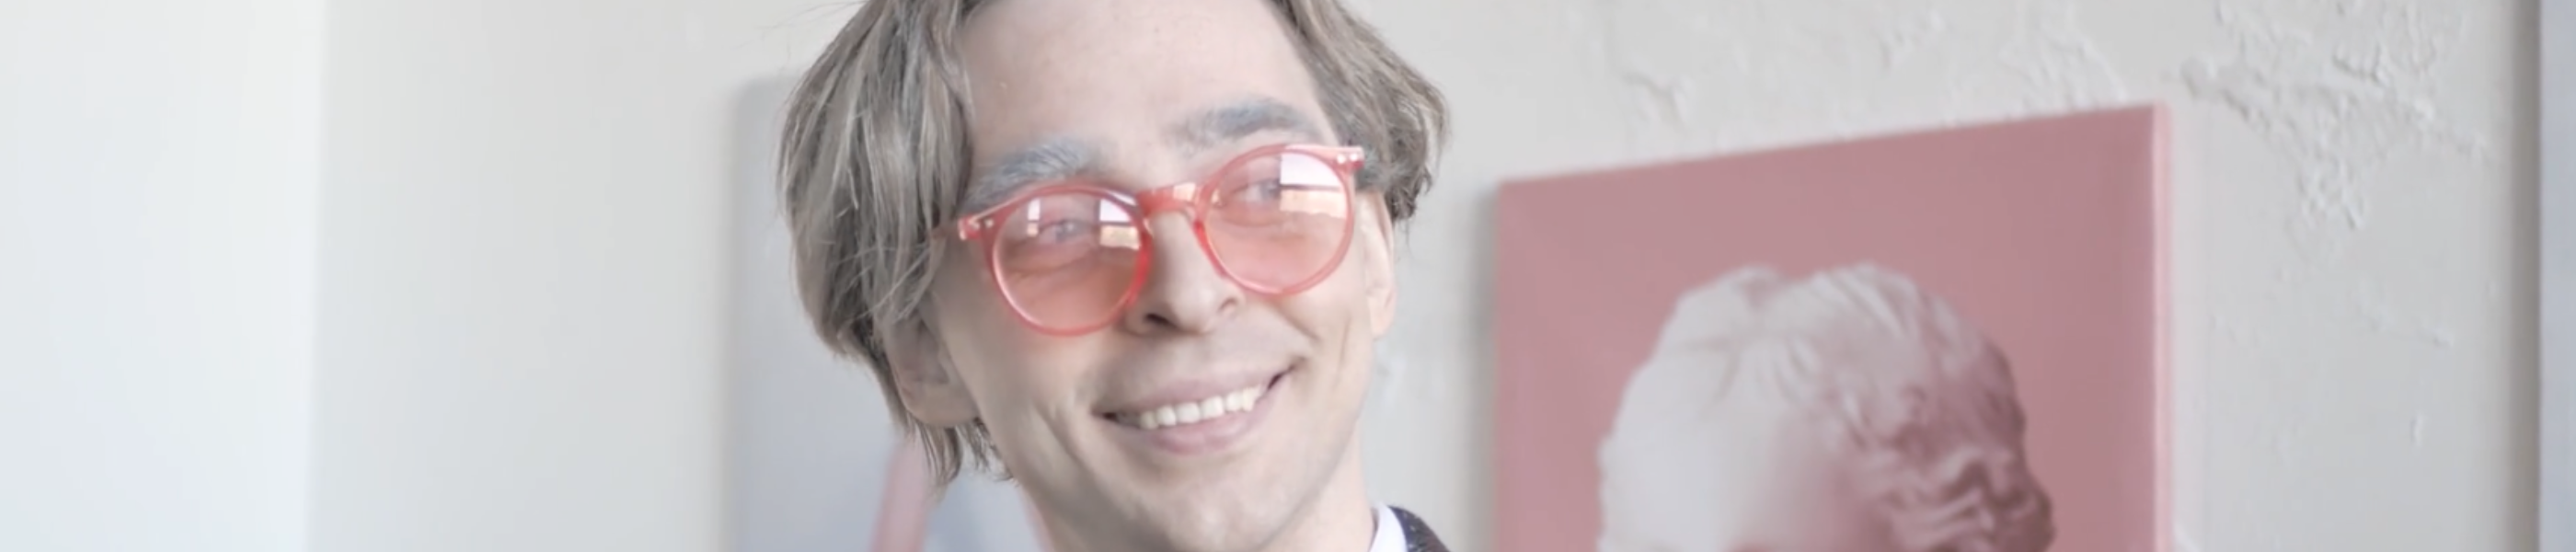 Foto van een lachende persoon met een zalmroze bril